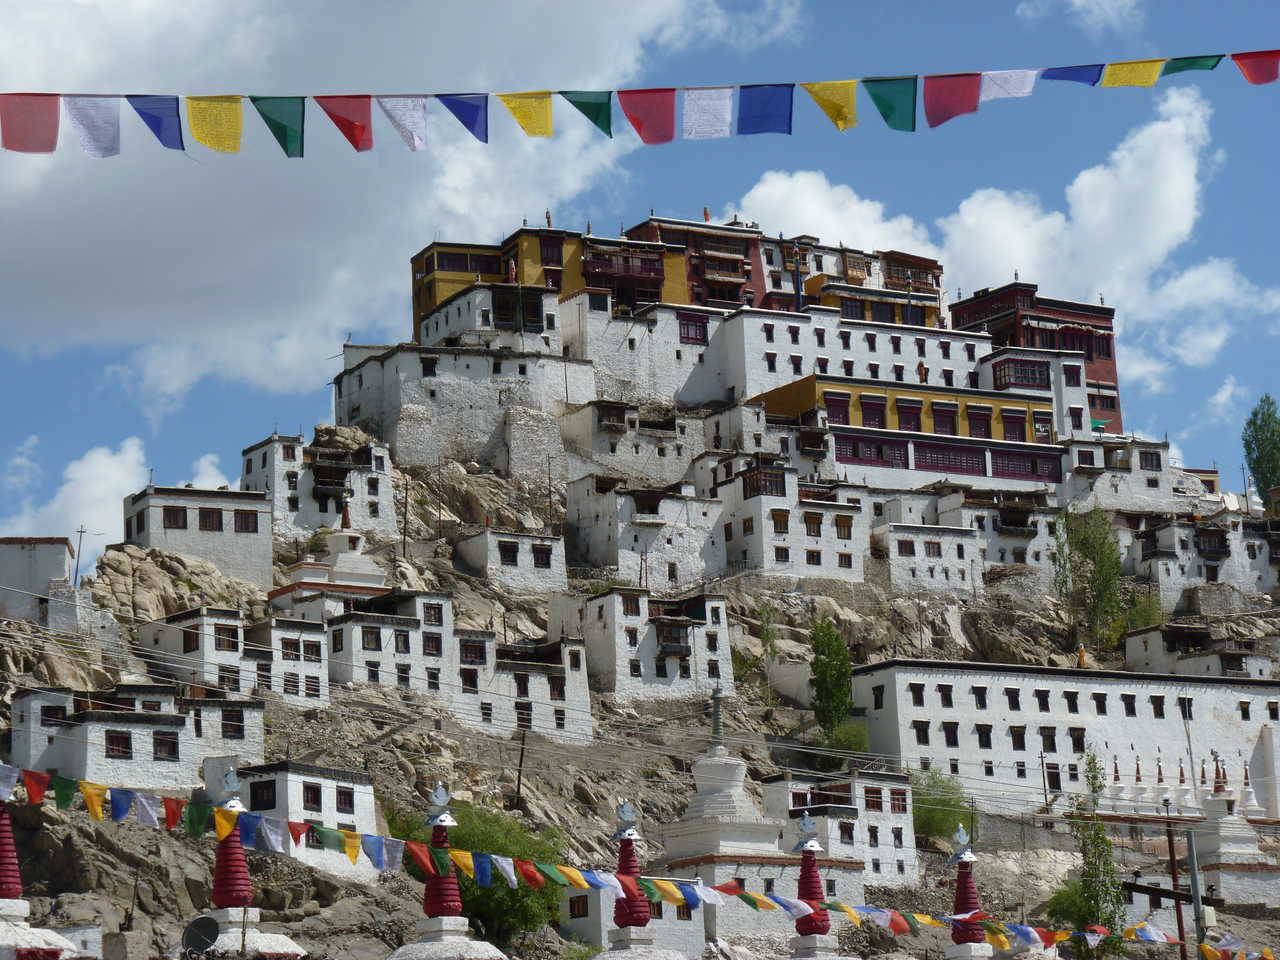 Le monastère de Thiksey, dans la vallée de l'Indus, en Inde Himalayenne